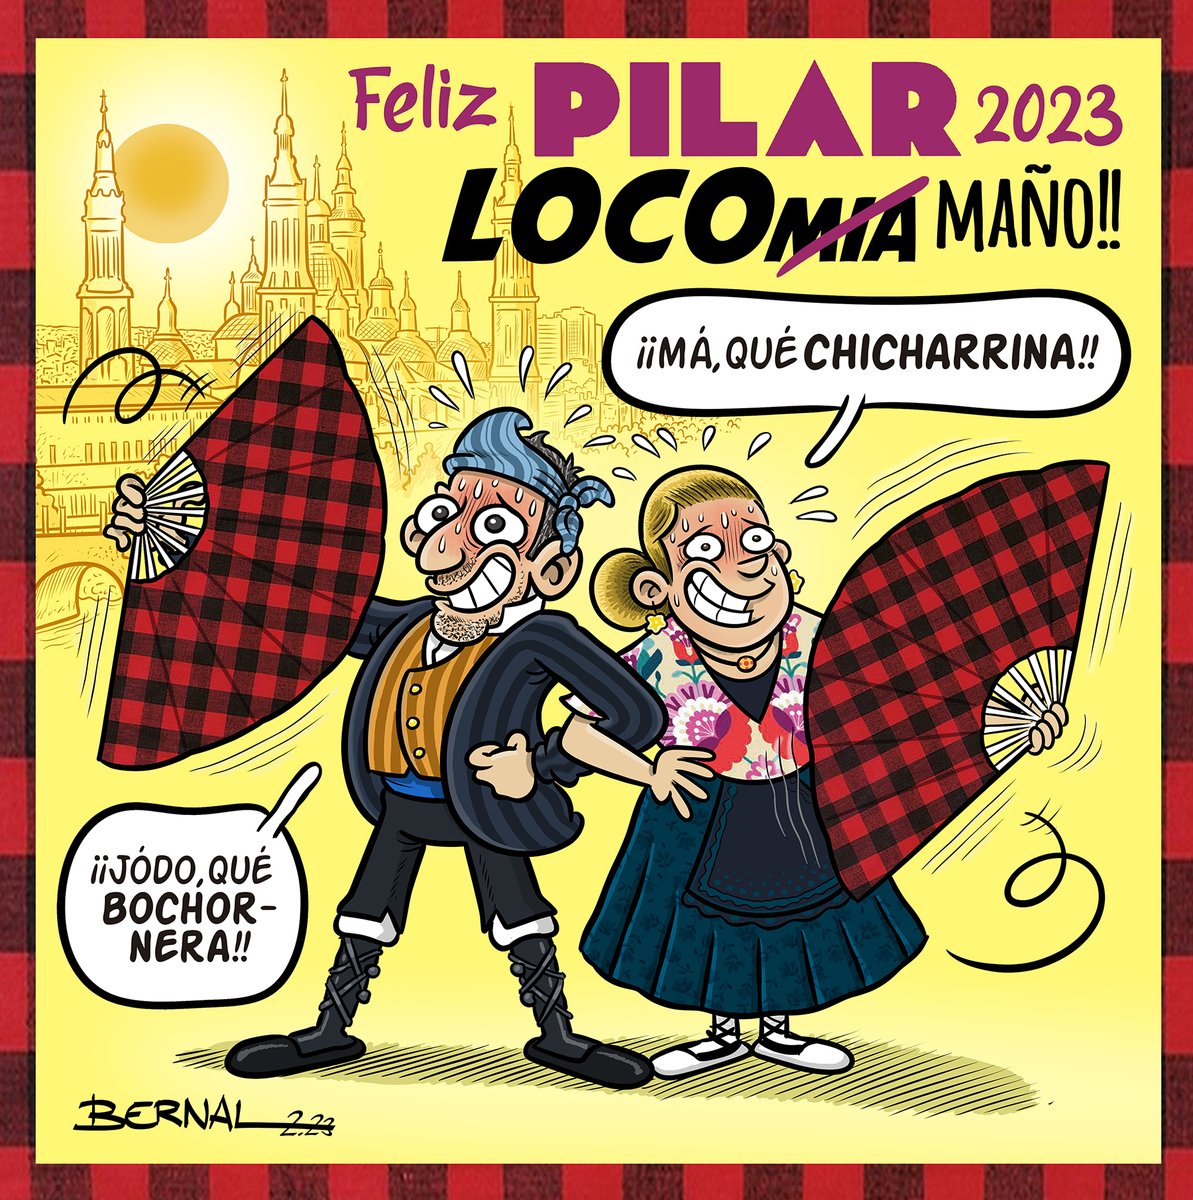 Bueno, mocetas y mocés… ¡¡FELICES y sofoquinas FIESTAS del PILAR!! 🌞🔥 
#Pilar23